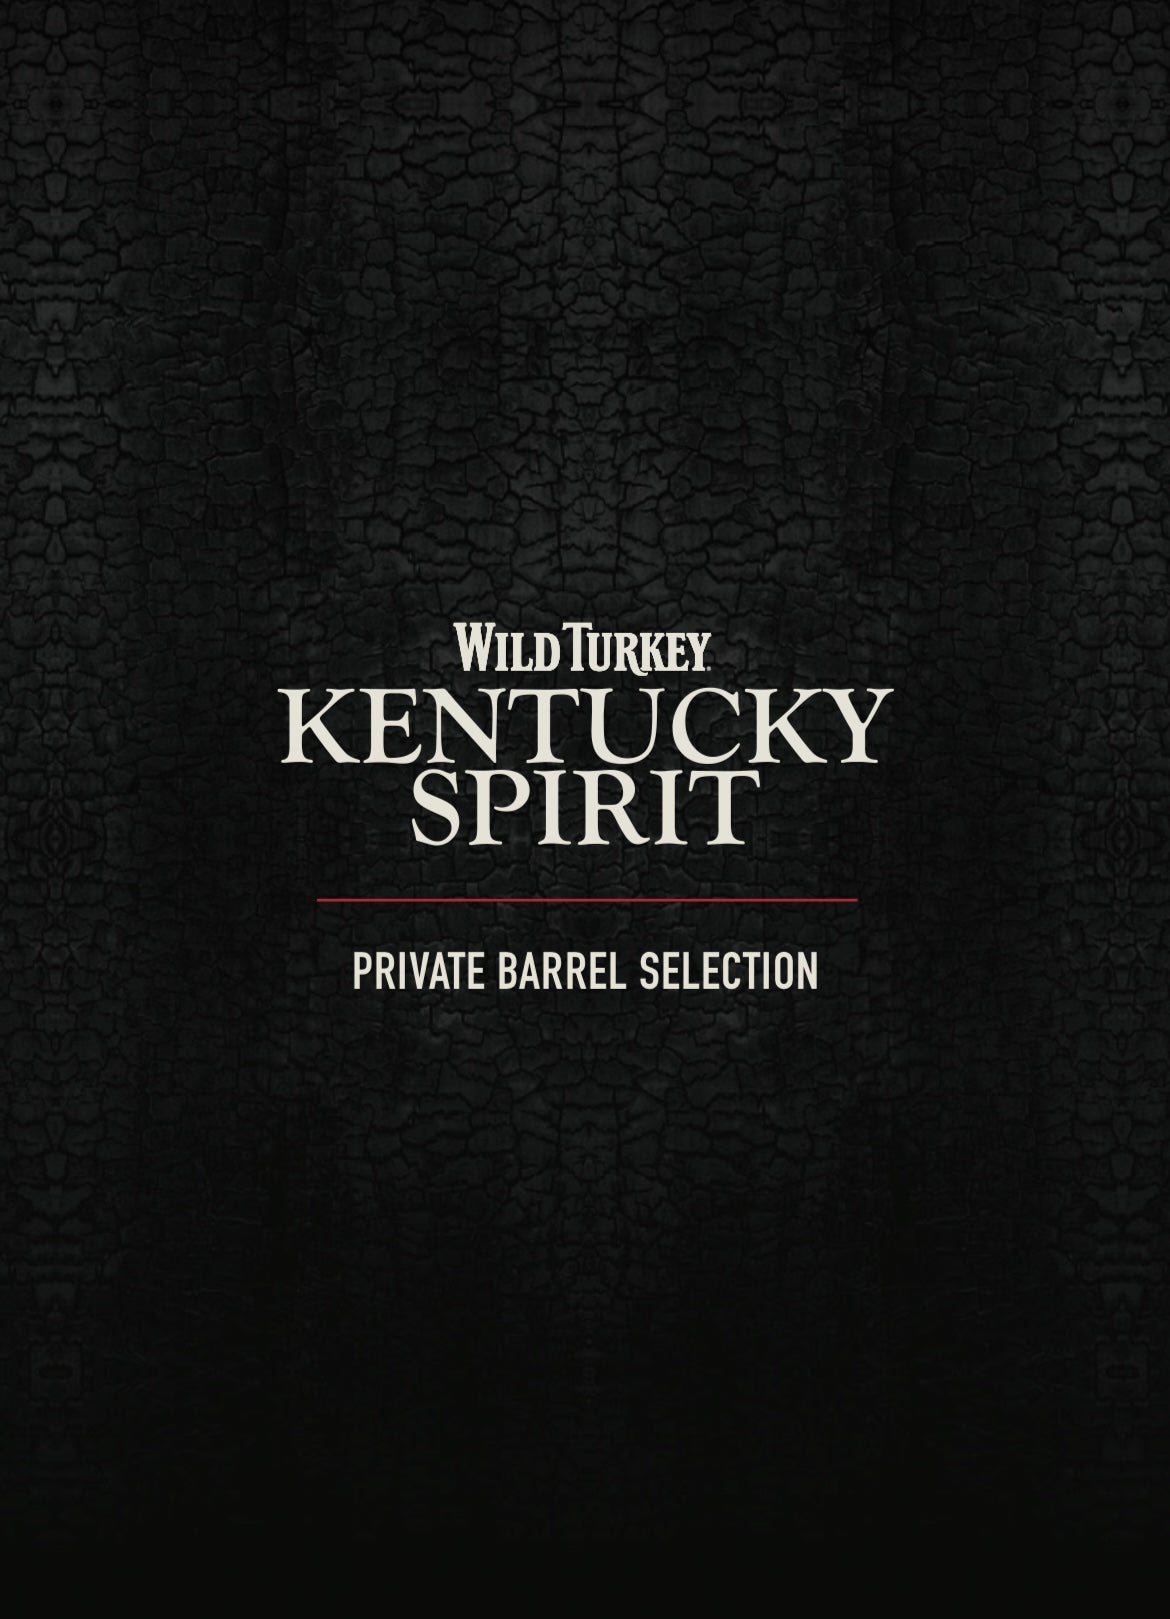 Kentucky Spirit barrel pick